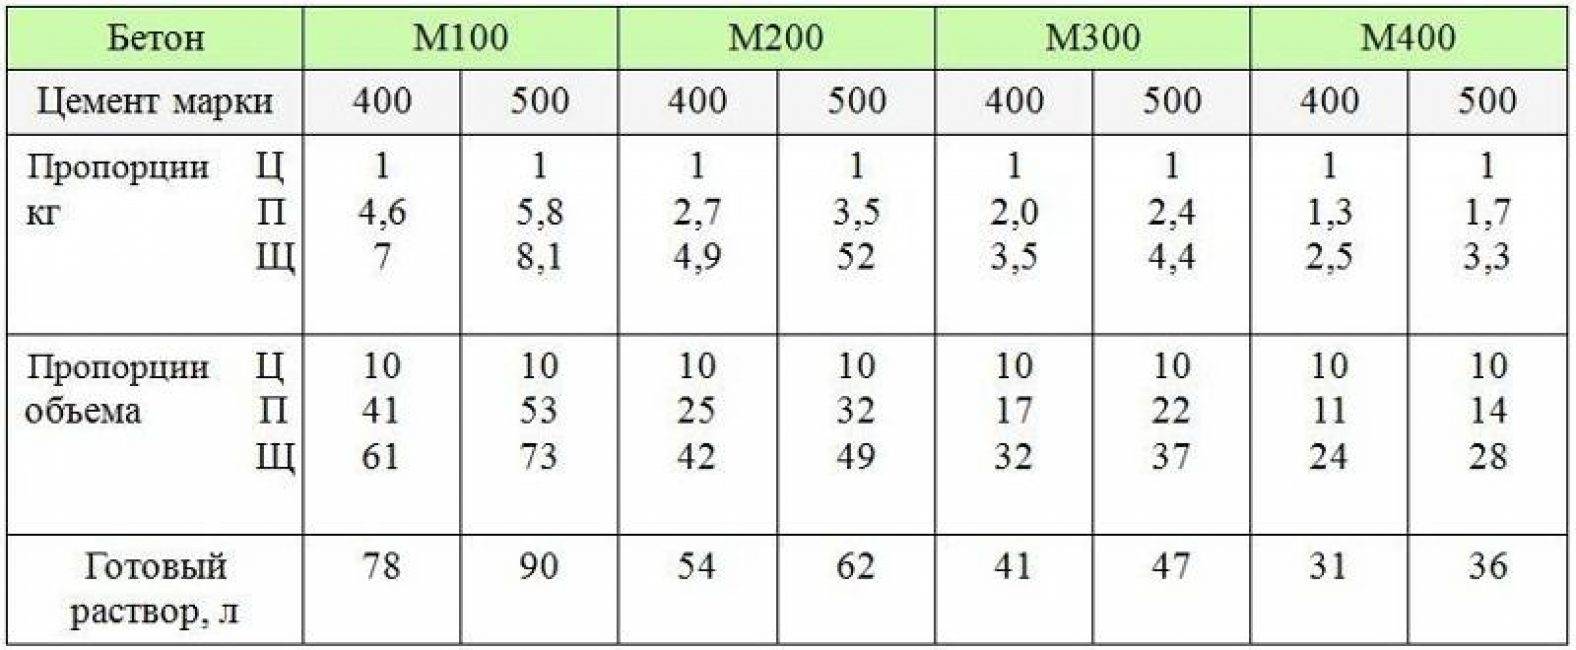 Бетон марки м400: состав, характеристики, пропорции